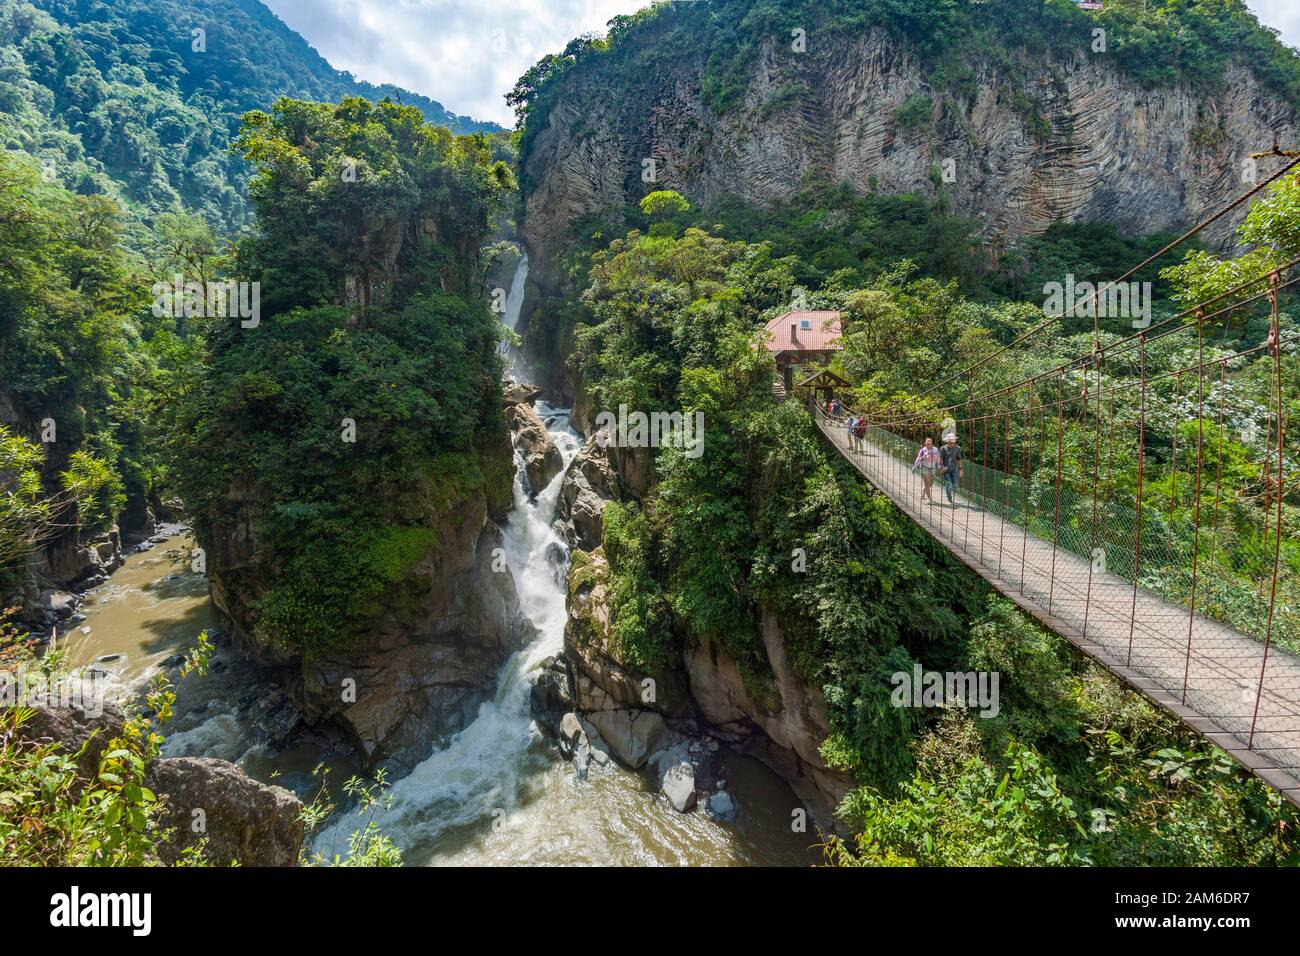 La chute d'eau El Pailón del Diablo et le pont avec les touristes sur la rivière Pastaza près de Baños en Équateur. Banque D'Images